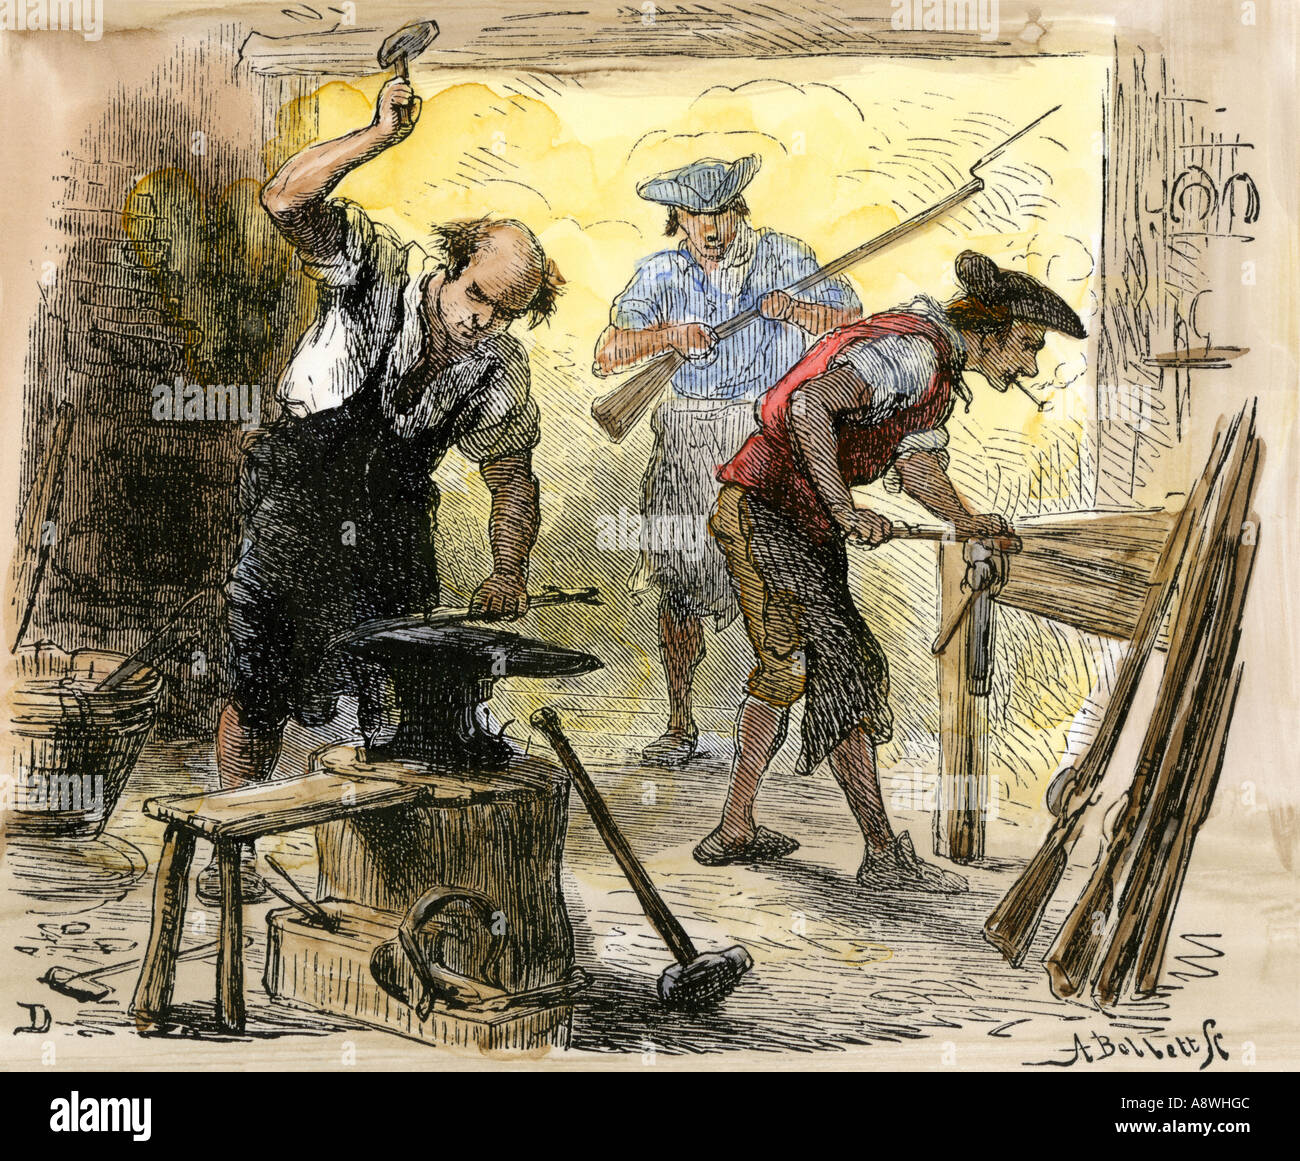 Forgeage armuriers mousquets pour les Minutemen avant la Révolution américaine, années 1770. À la main, gravure sur bois, d'une illustration Darley Banque D'Images